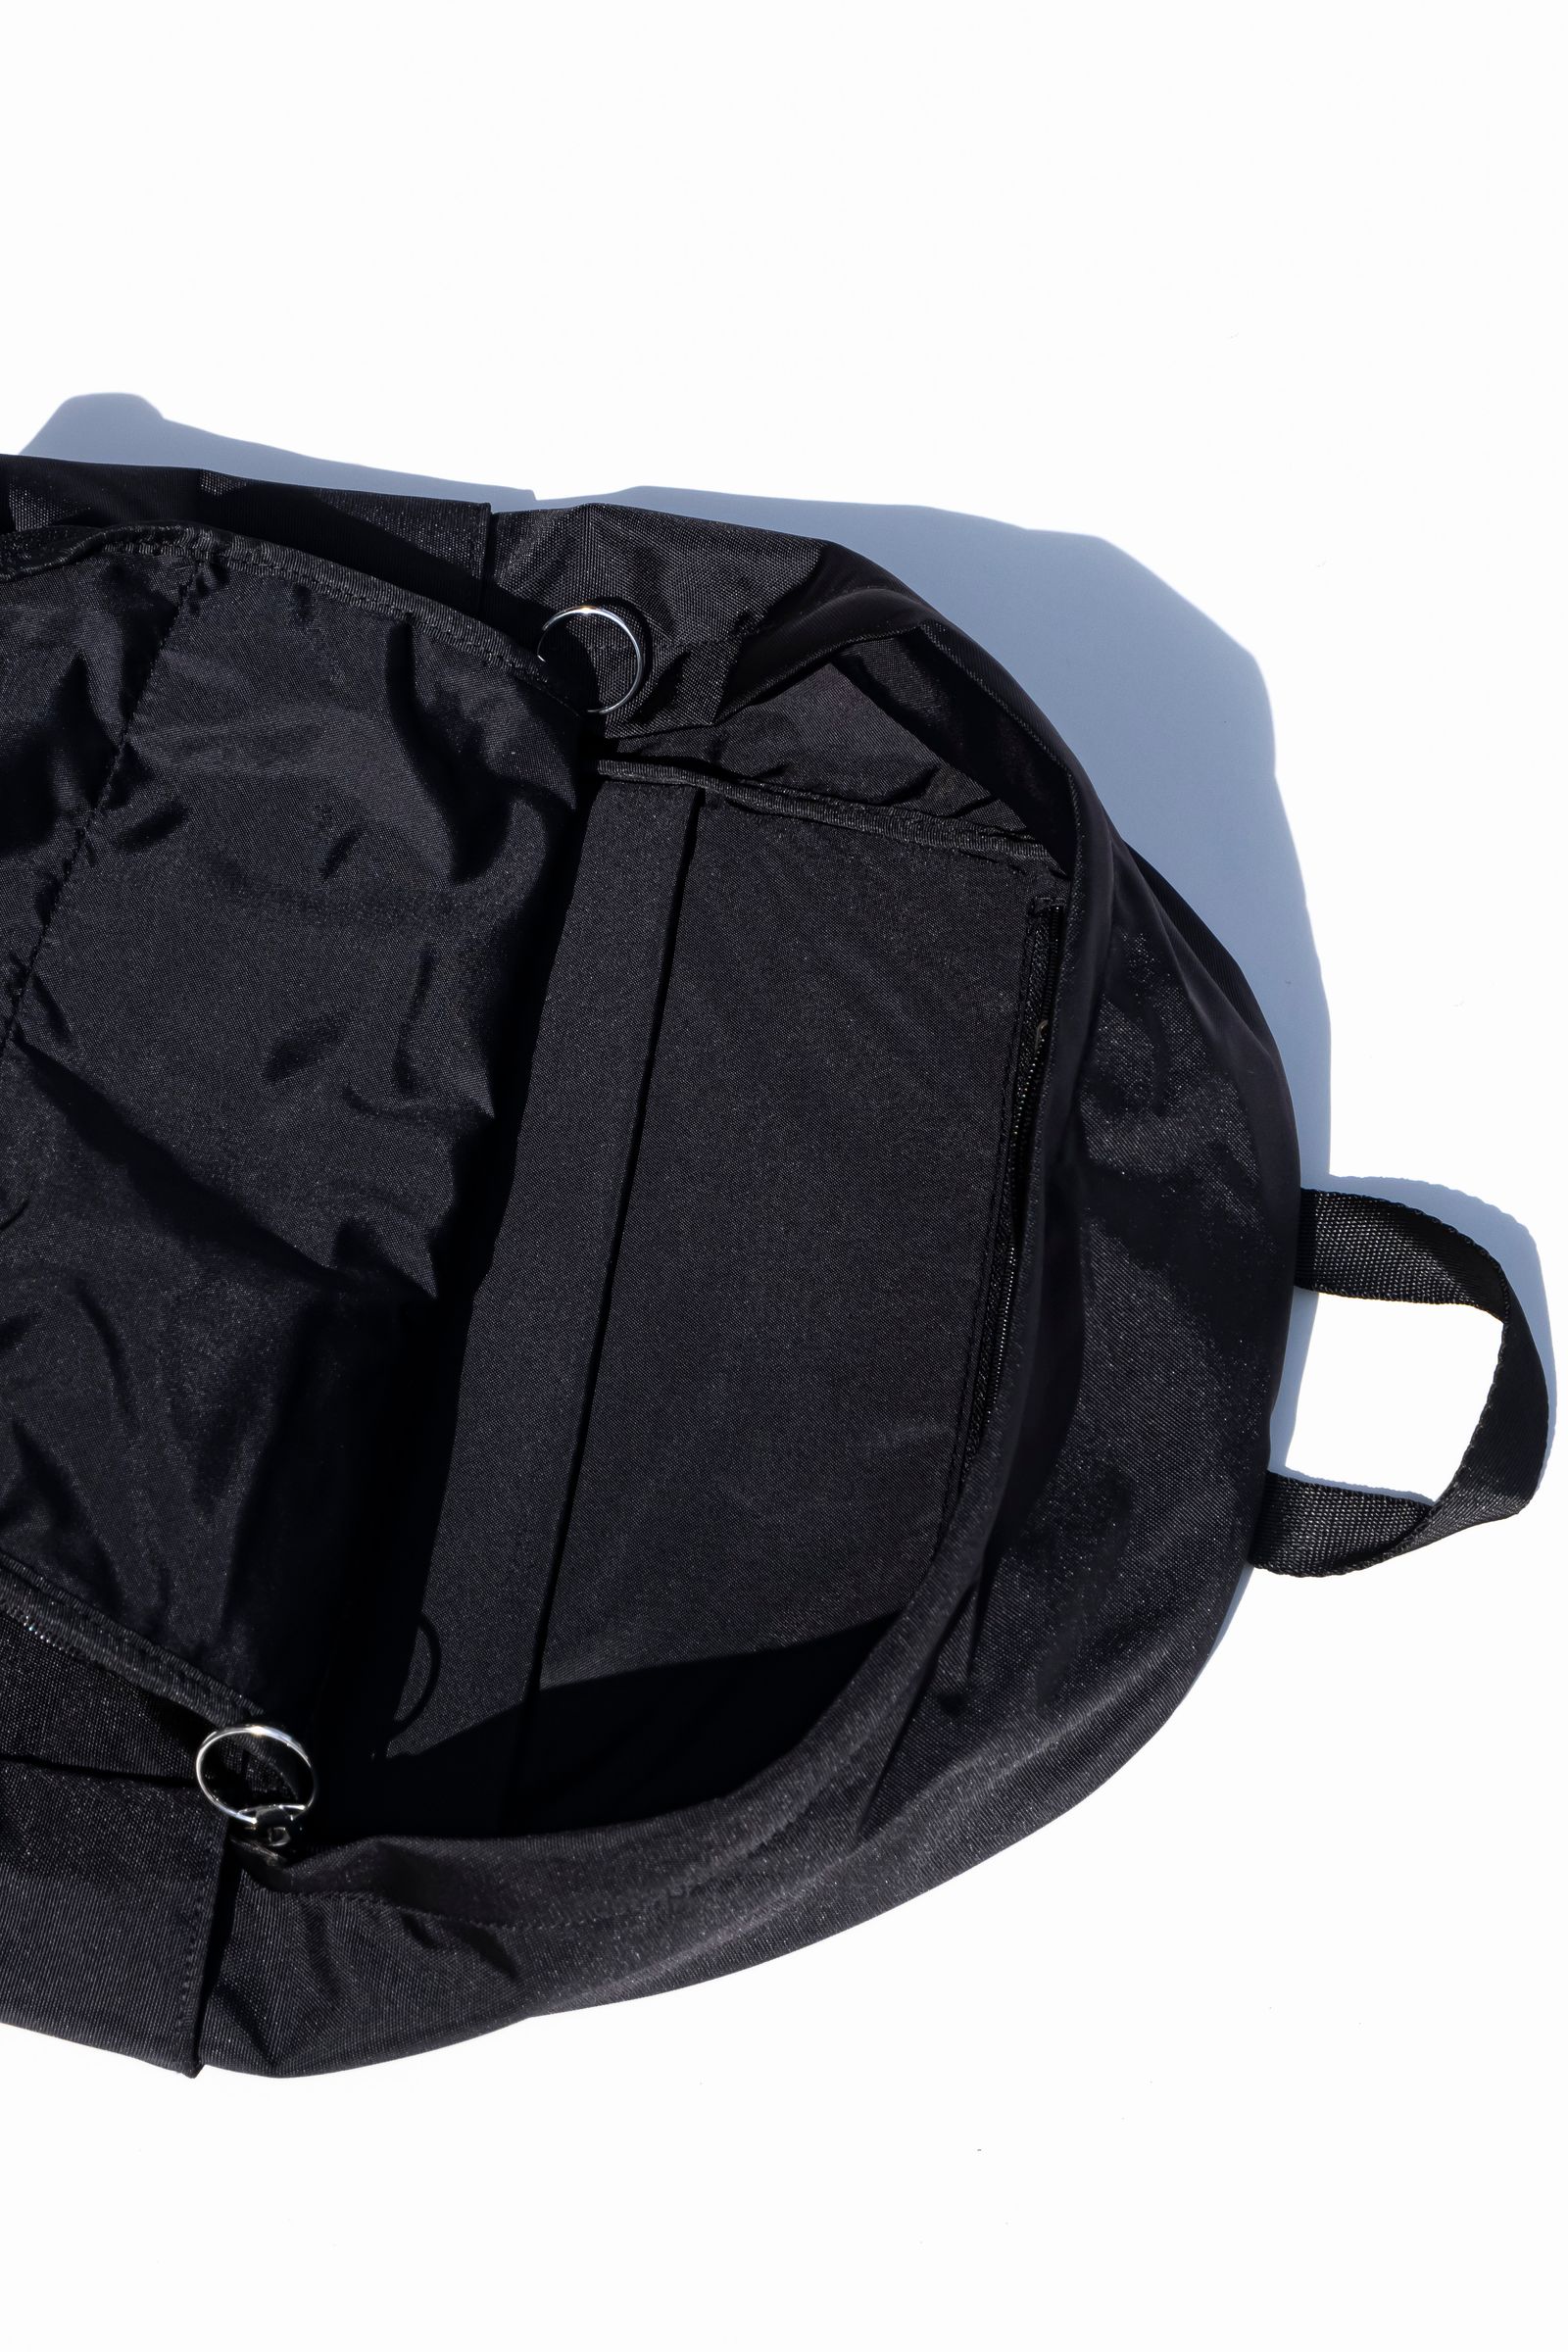 HIDAKA - Backpack with wallet | Retikle Online Store